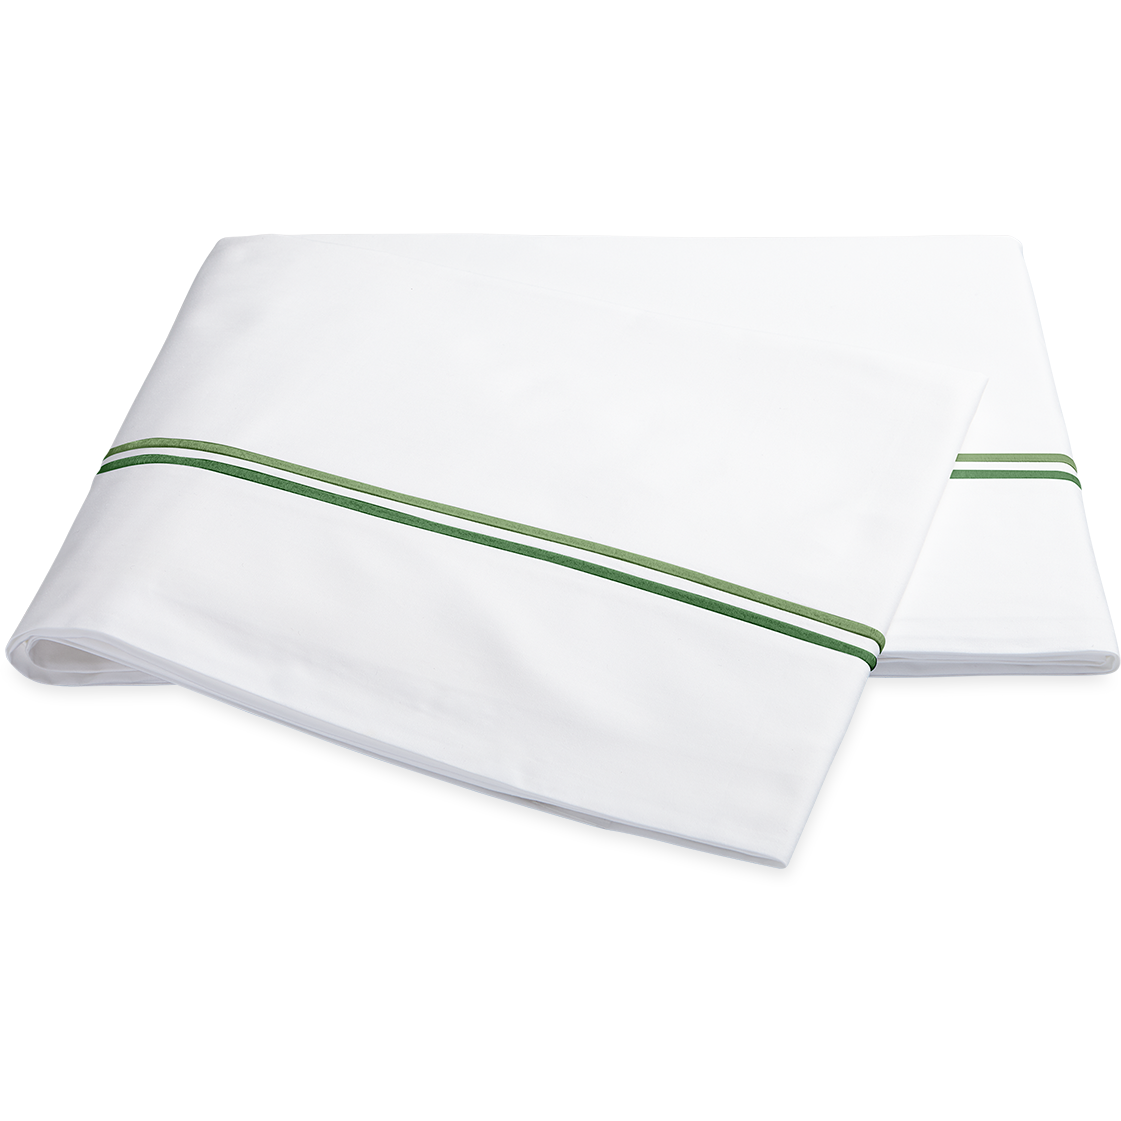 Matouk Essex Sheet Set Flat Sheet Green Fine Linens